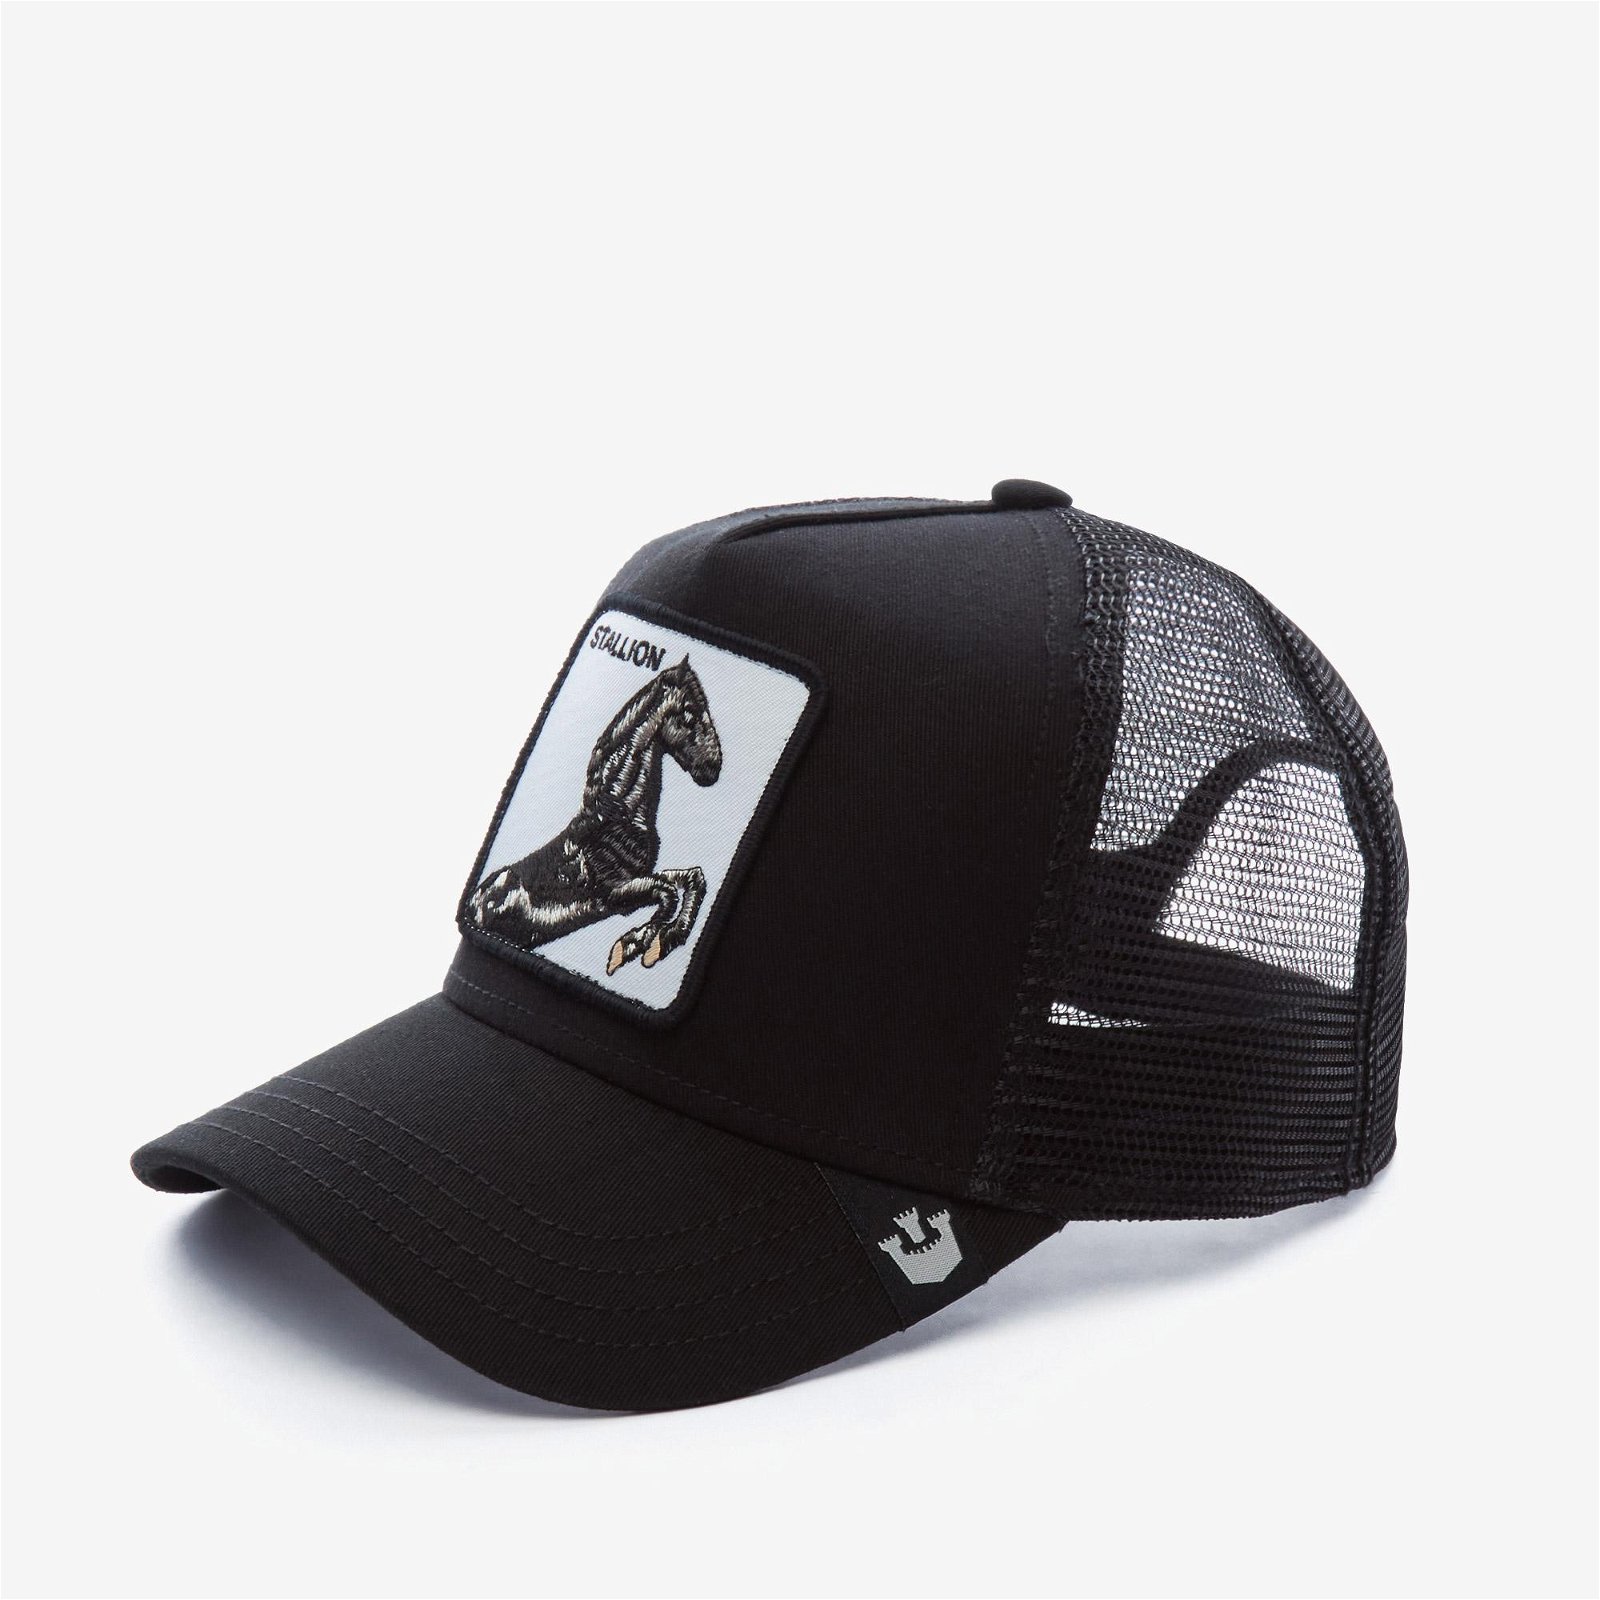 Goorın Bros Animal Farm Unisex Siyah Şapka